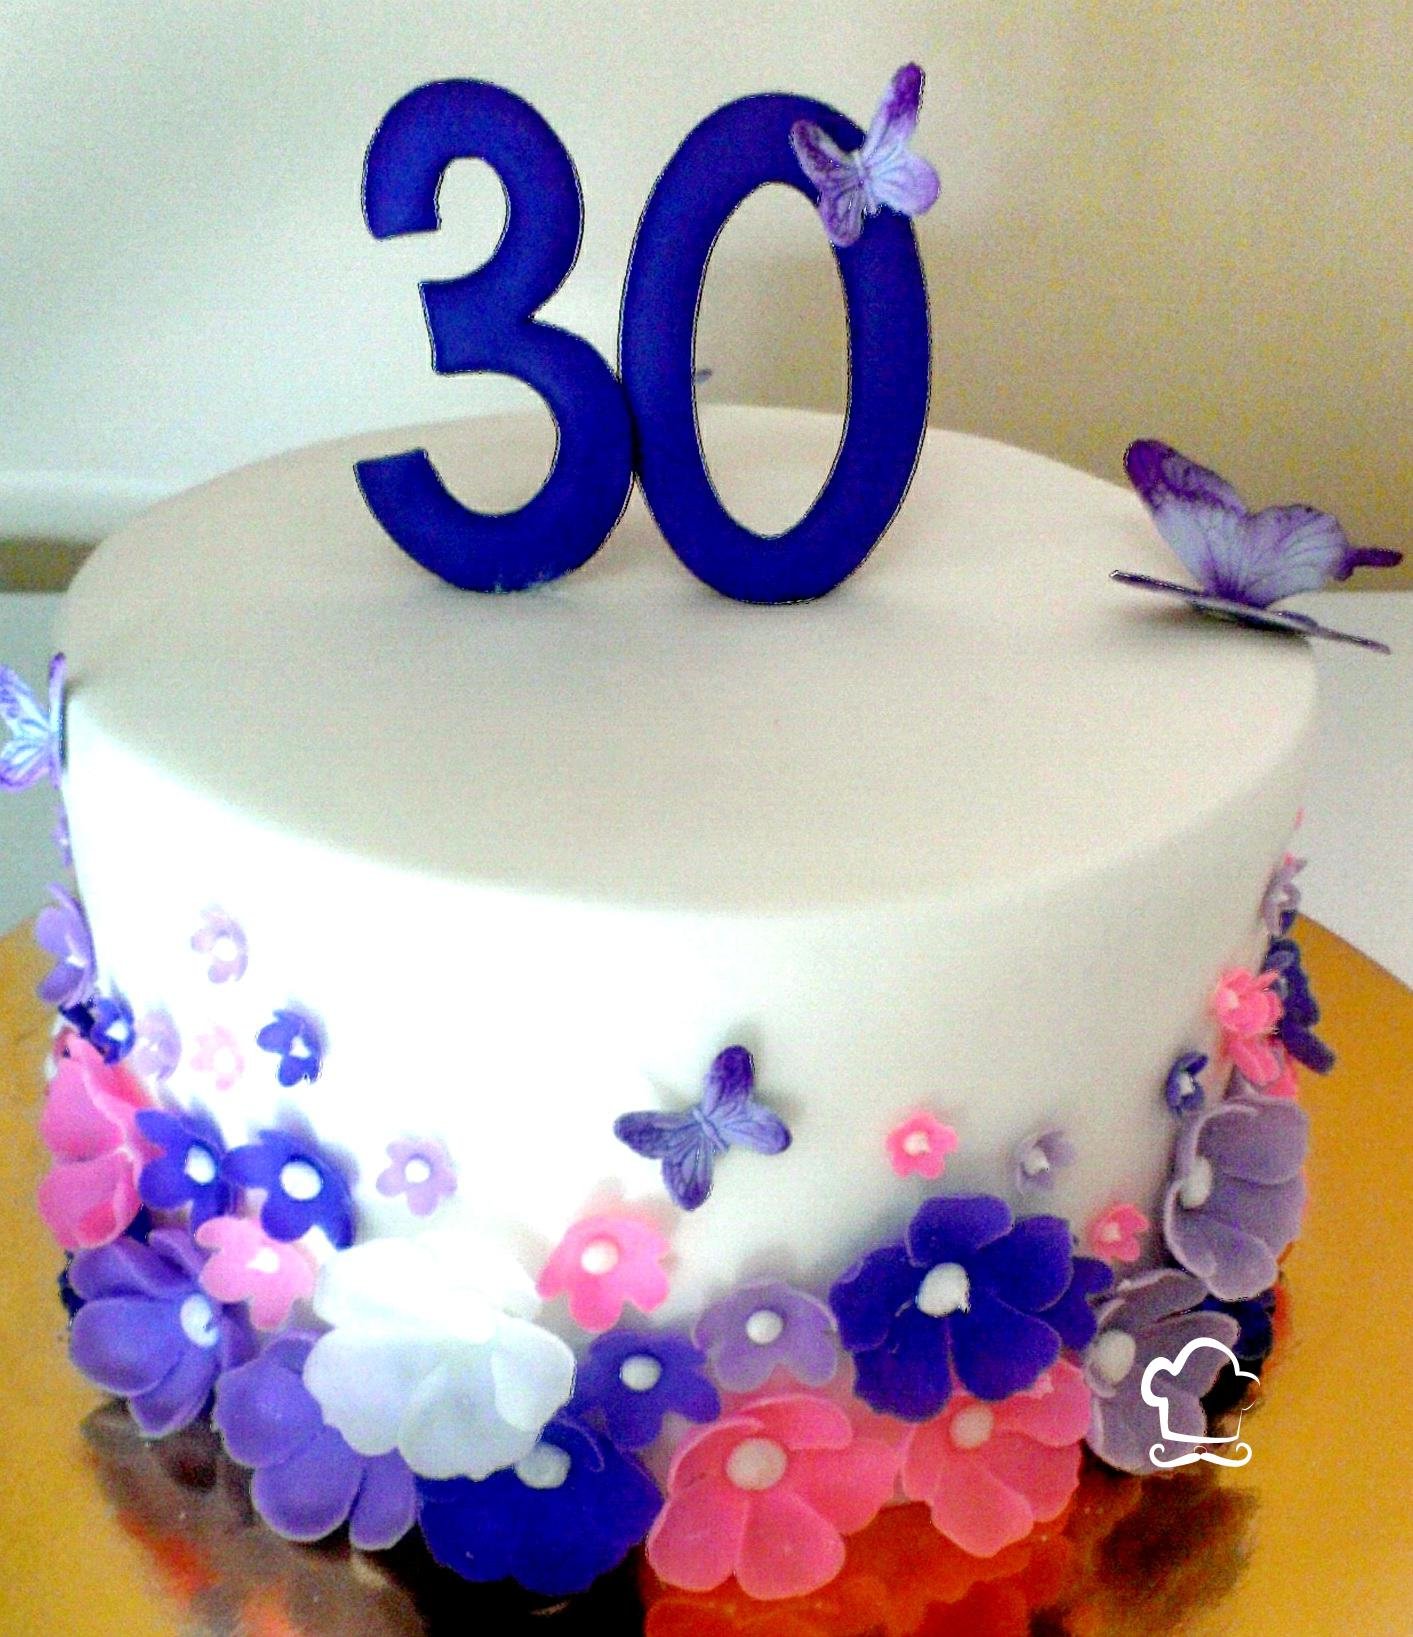 Поздравление с днем рождения 30 летием дочери. Красивый торт на день рождения 30 лет. Торт на день рождения 30 лет девушке. Торт 30 лет девушке красивый на день рождения. Украшение торта на юбилей 30 лет девушке.